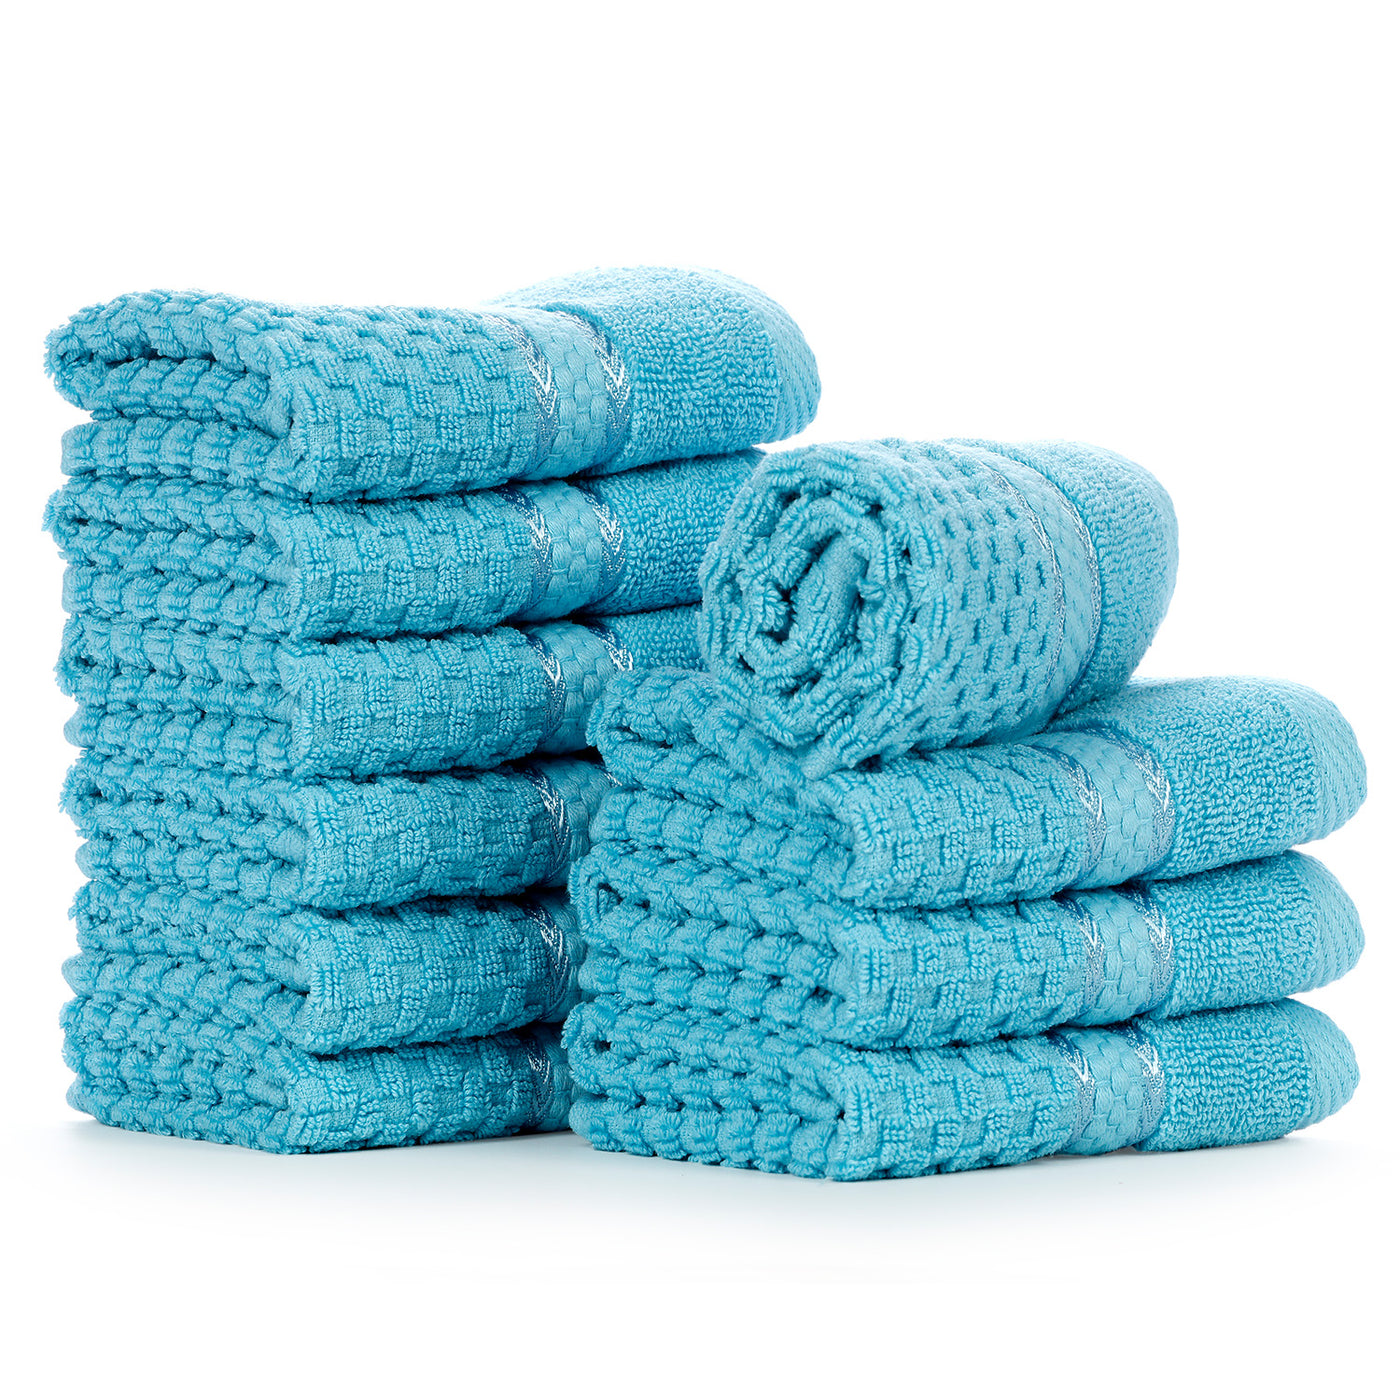 12x12 Premium Color Washcloths - 1 lb/dz - Blue Mist/Sky